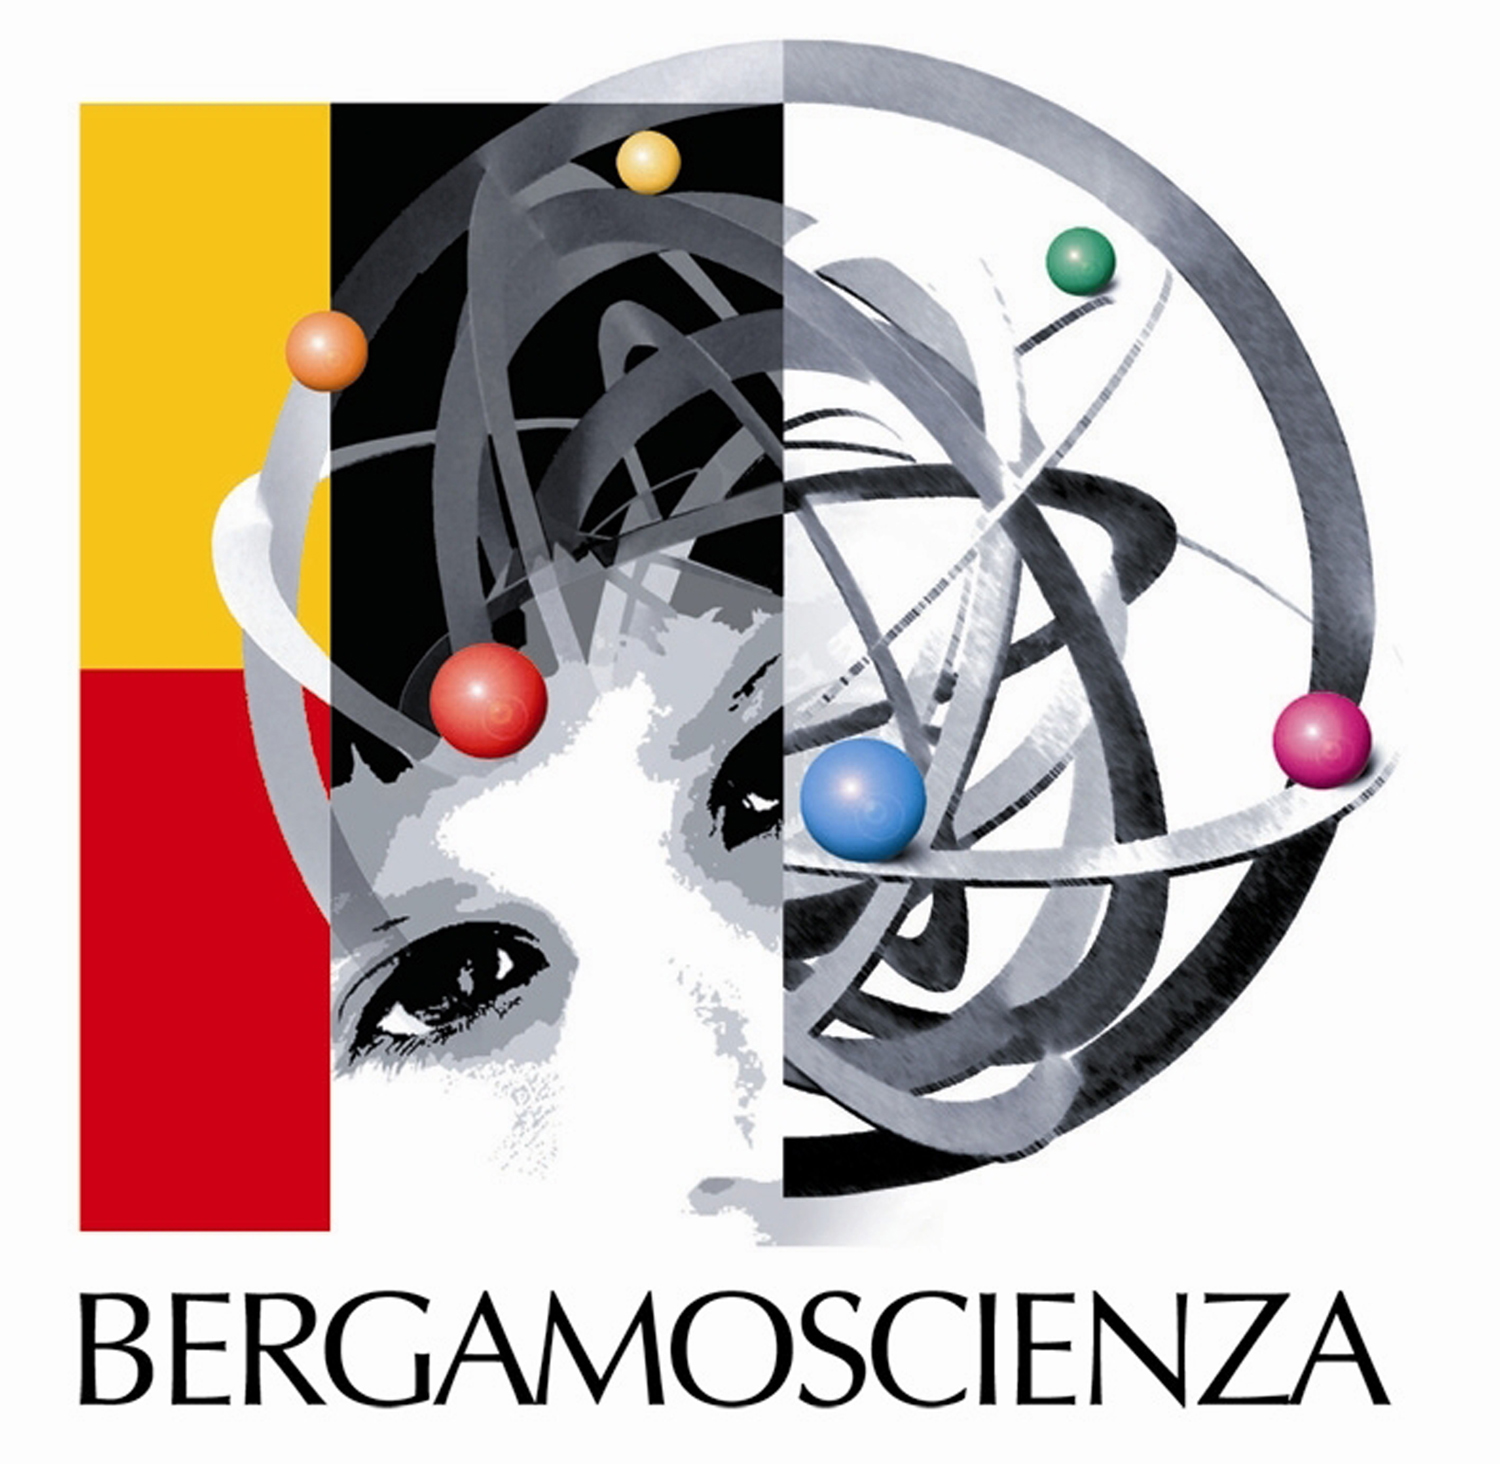 Dal 3 al 19 ottobre 2014 parte la XII edizione di BergamoScienza